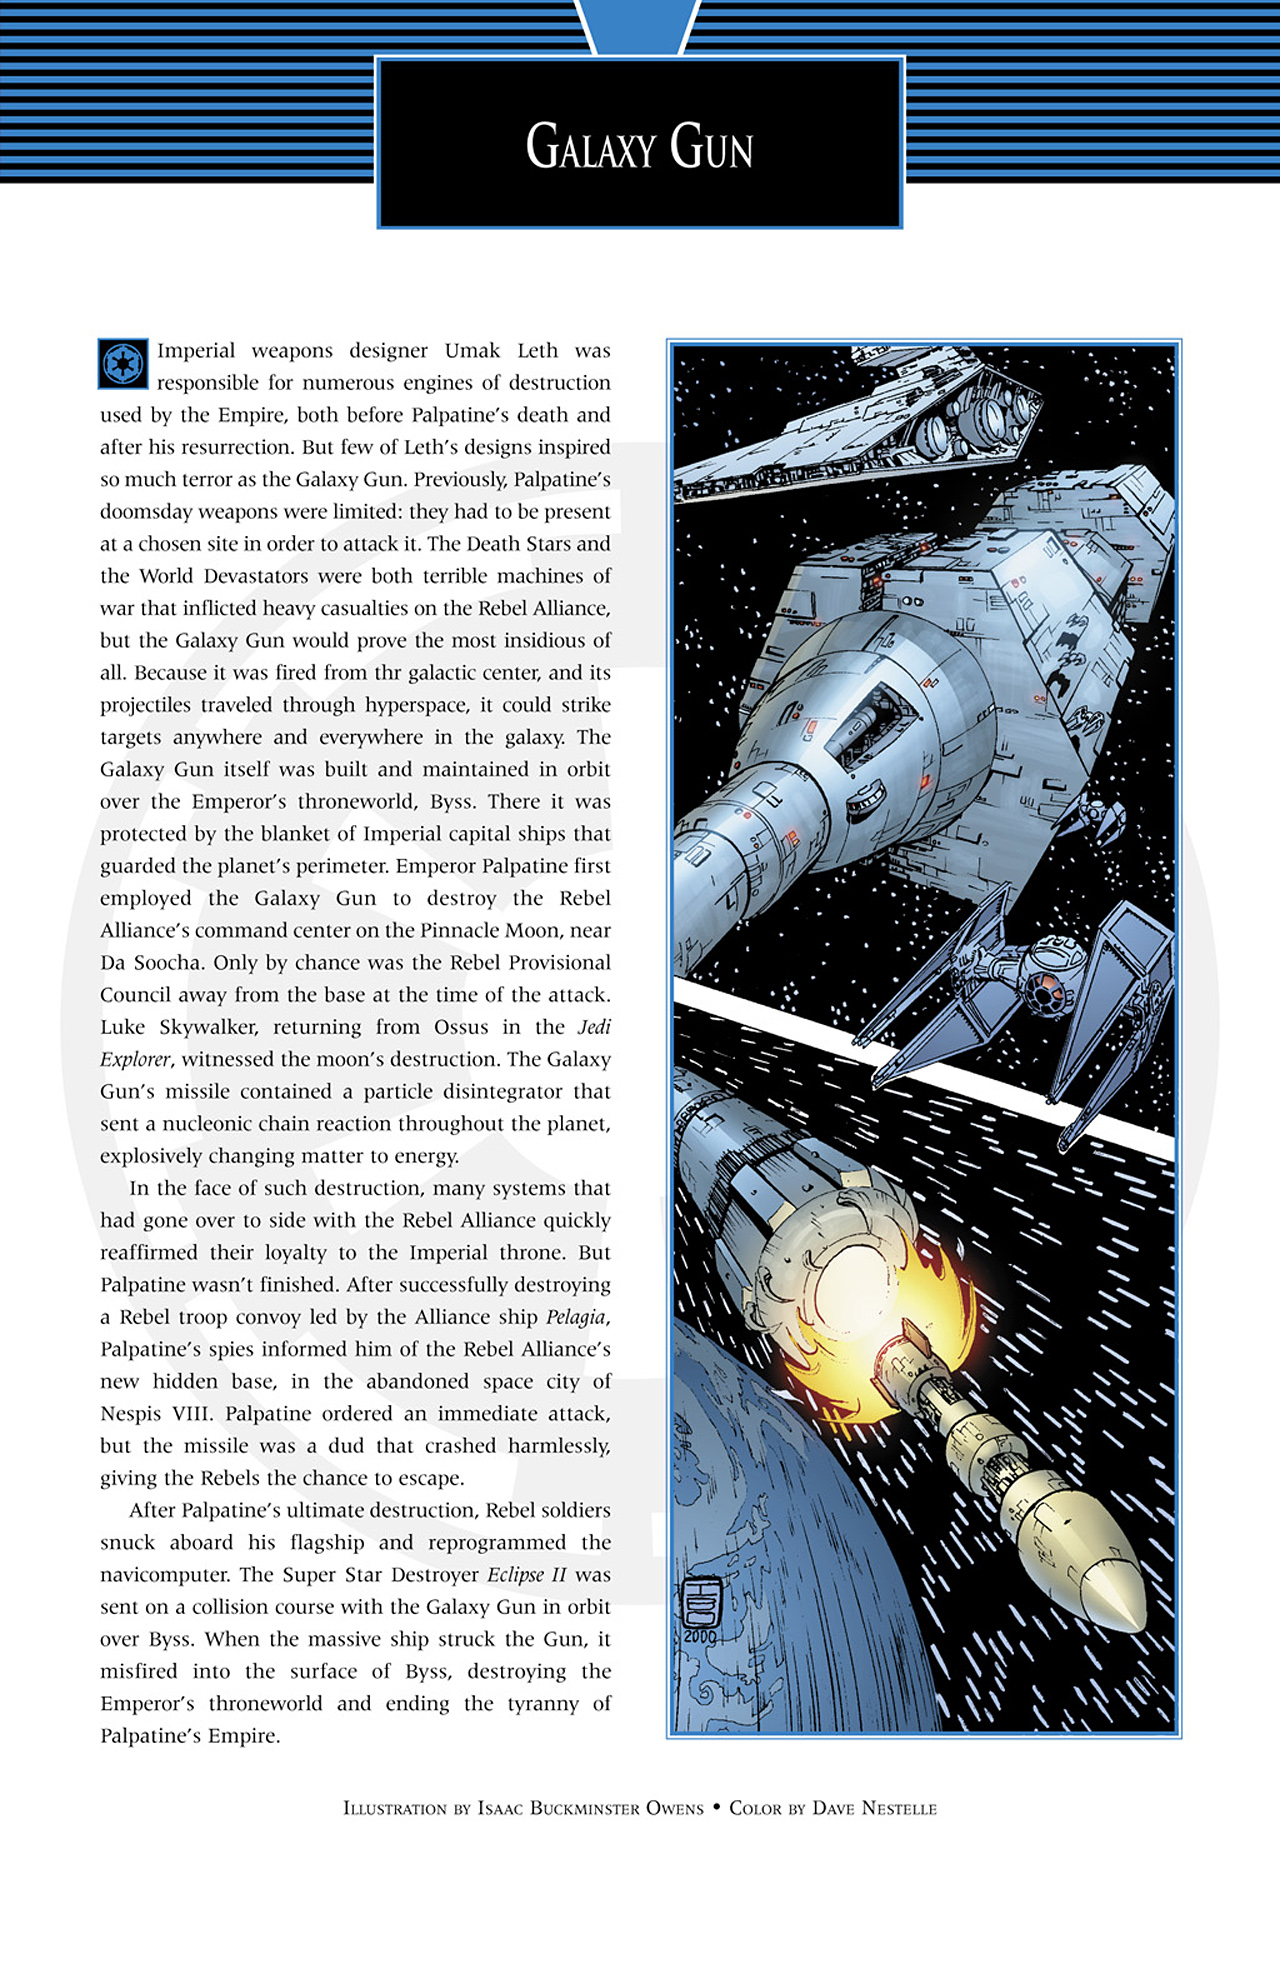 Read online Star Wars Handbook comic -  Issue #3 - 9